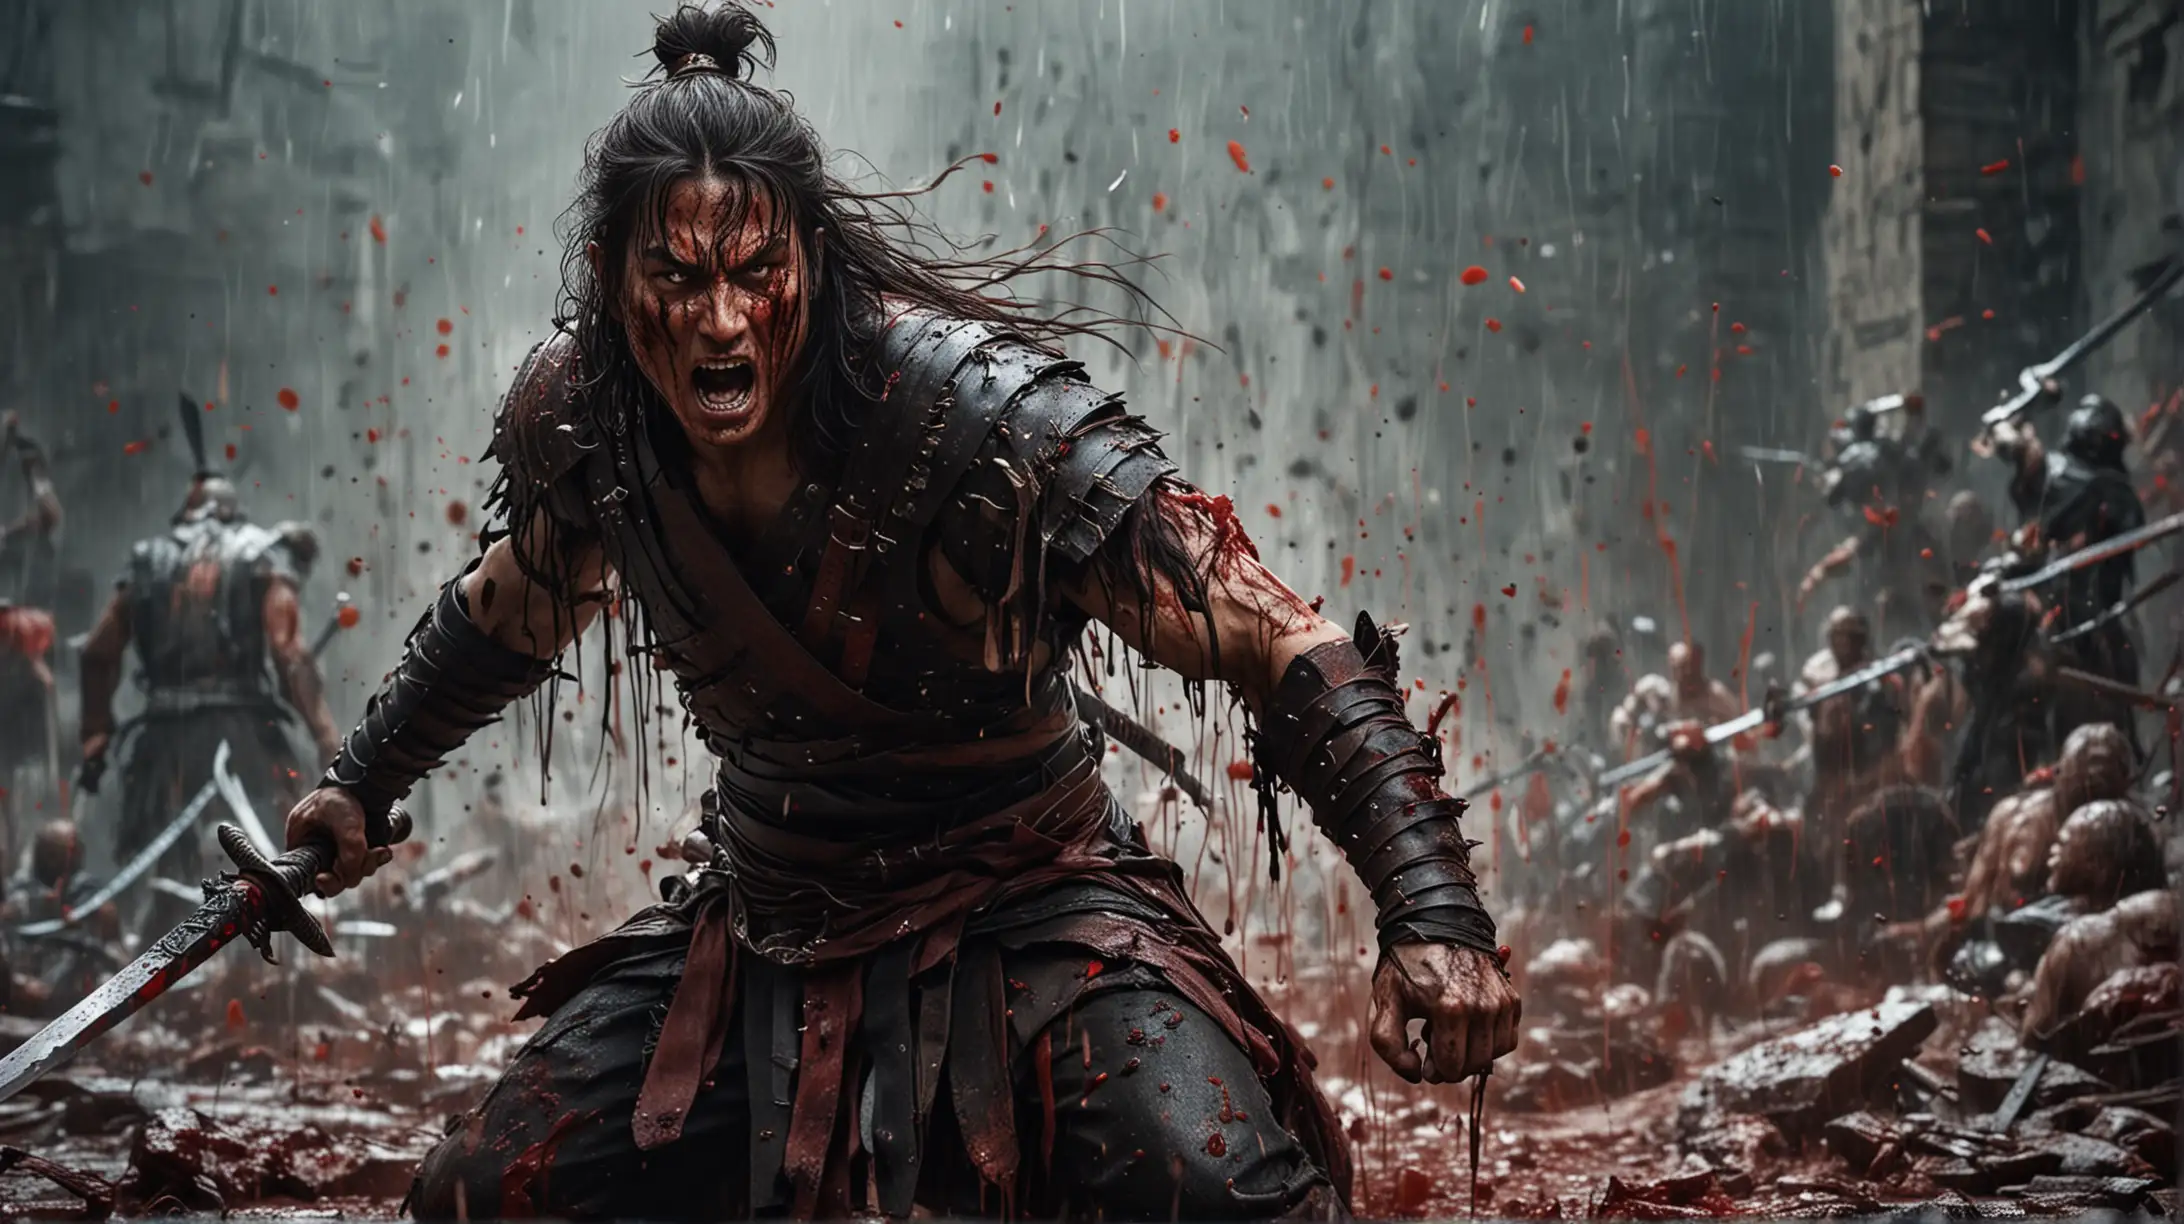 Fierce Warrior in Bloody Battle